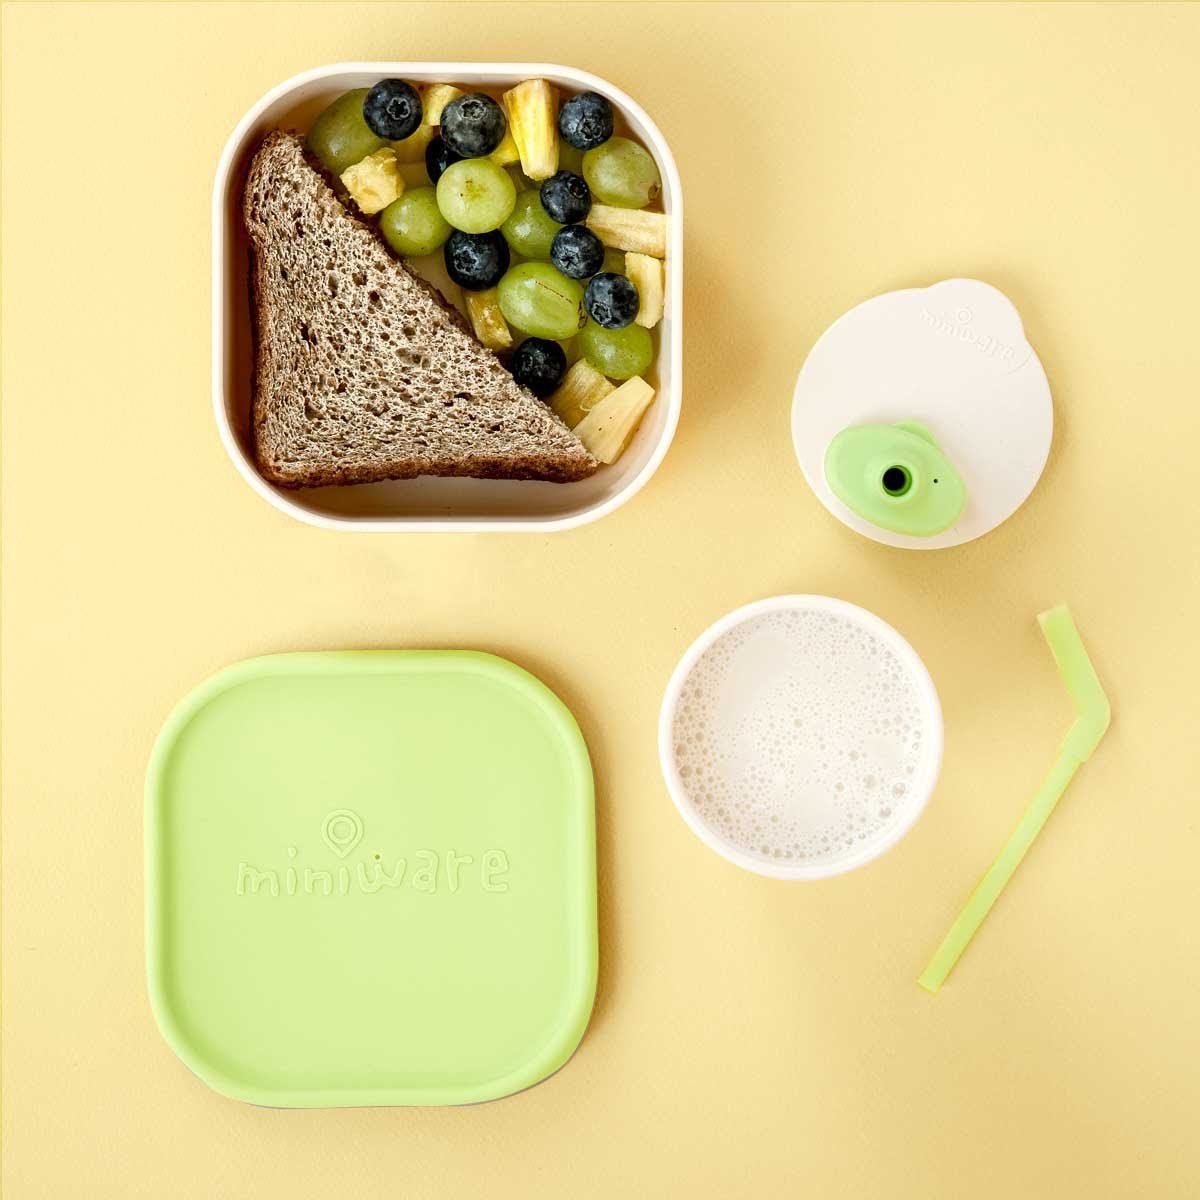 Sip & Snack Feeding Set - Vanilla Green | Miniware